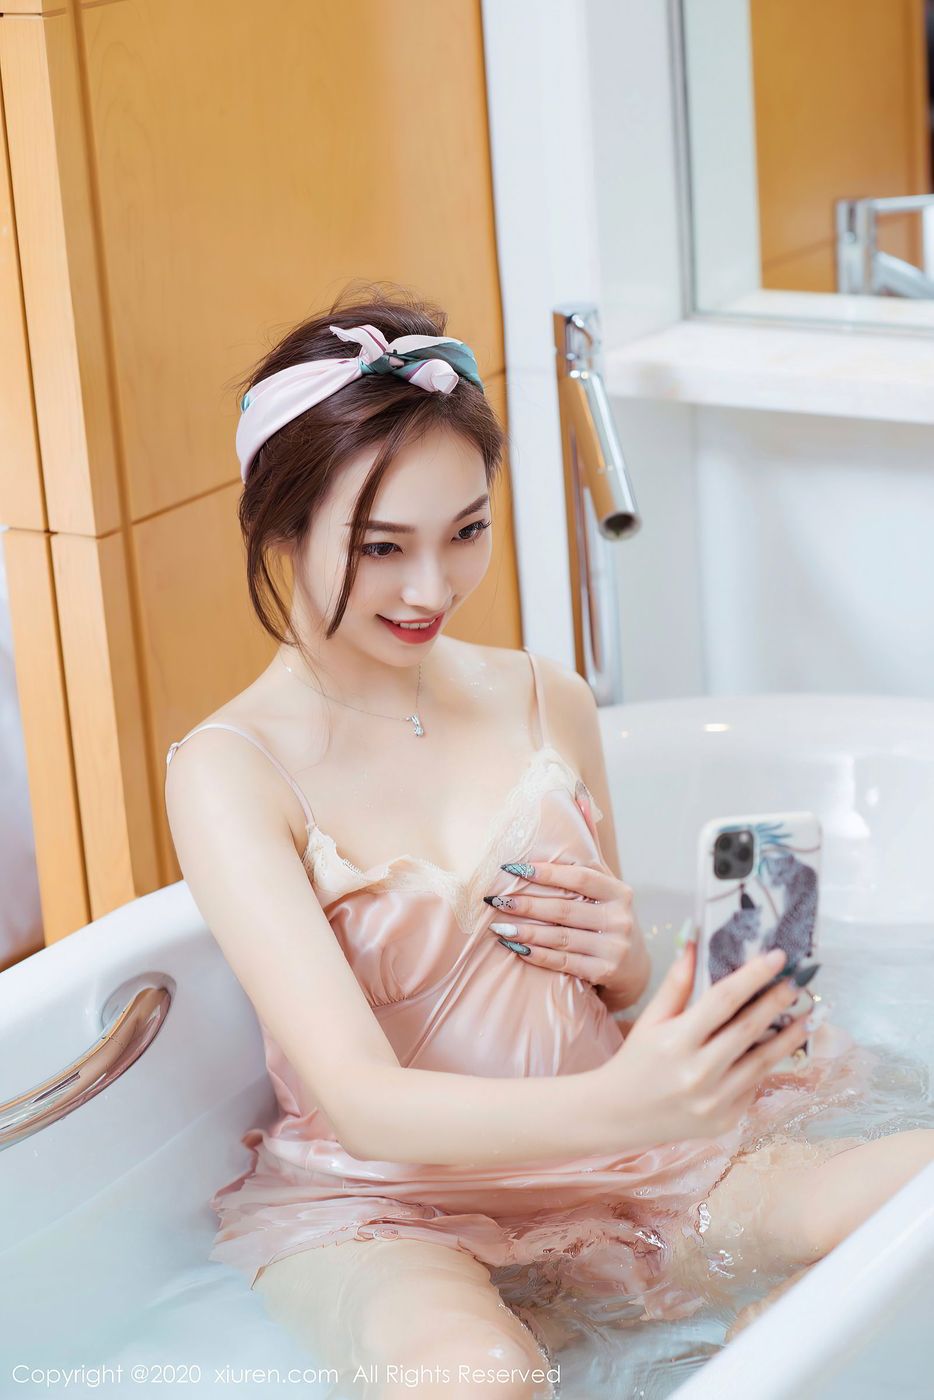 美女模特郑颖姗浴室丝质吊裙湿身诱惑大尺度写真